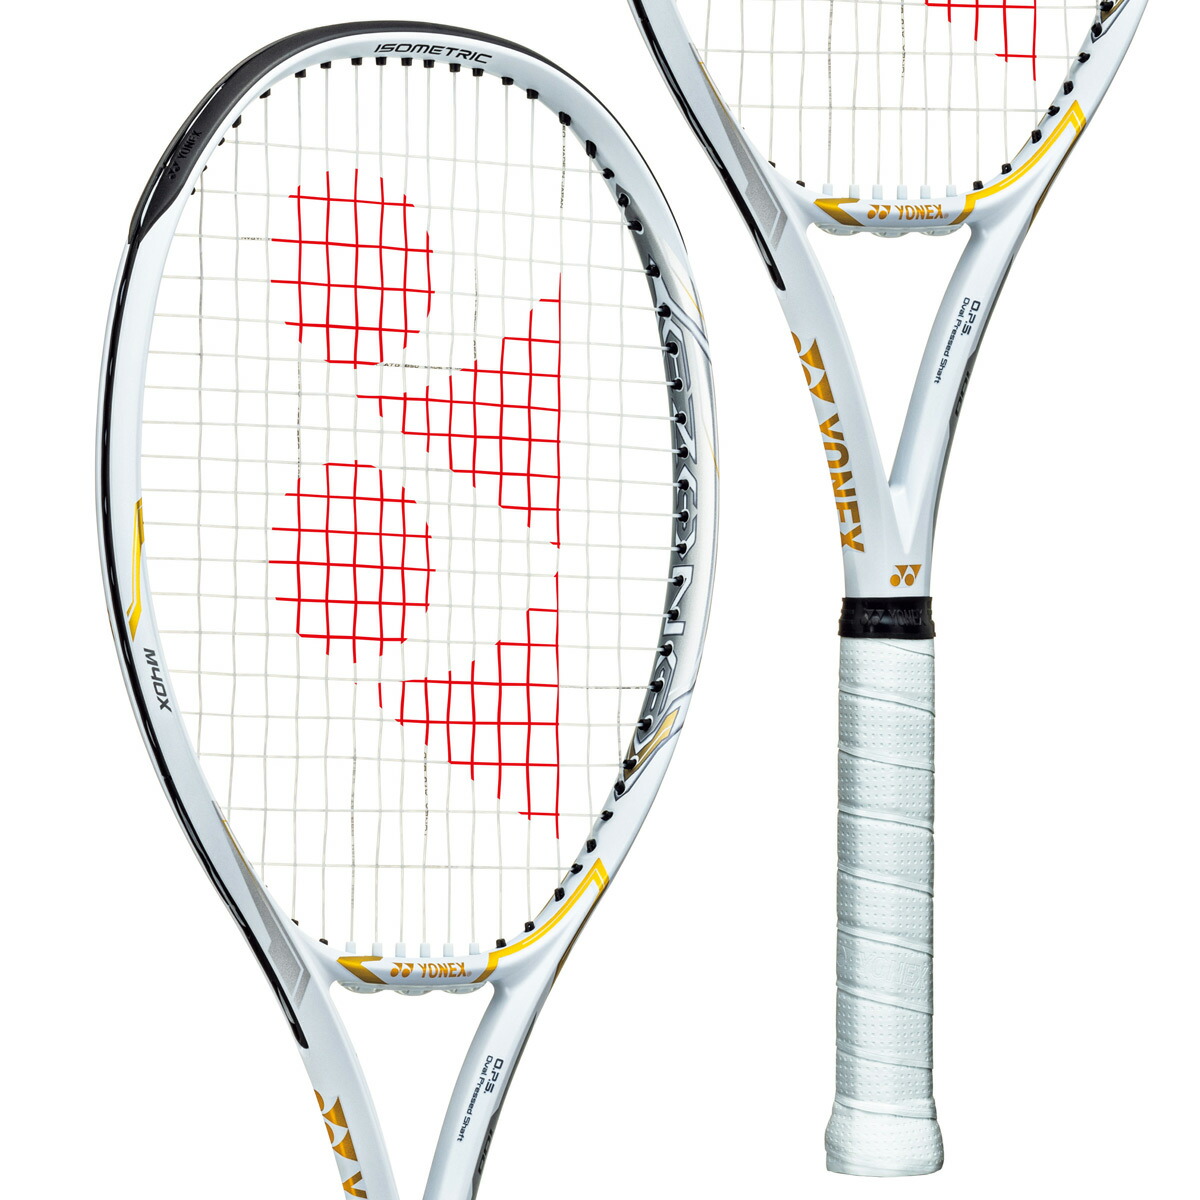 ヨネックス YONEX 硬式テニスラケット EZONE 100 NAOMI OSAKA LIMITED Eゾーン100 NOリミテッド 06EZ2NO  大坂なおみ選手モデル フレームのみ